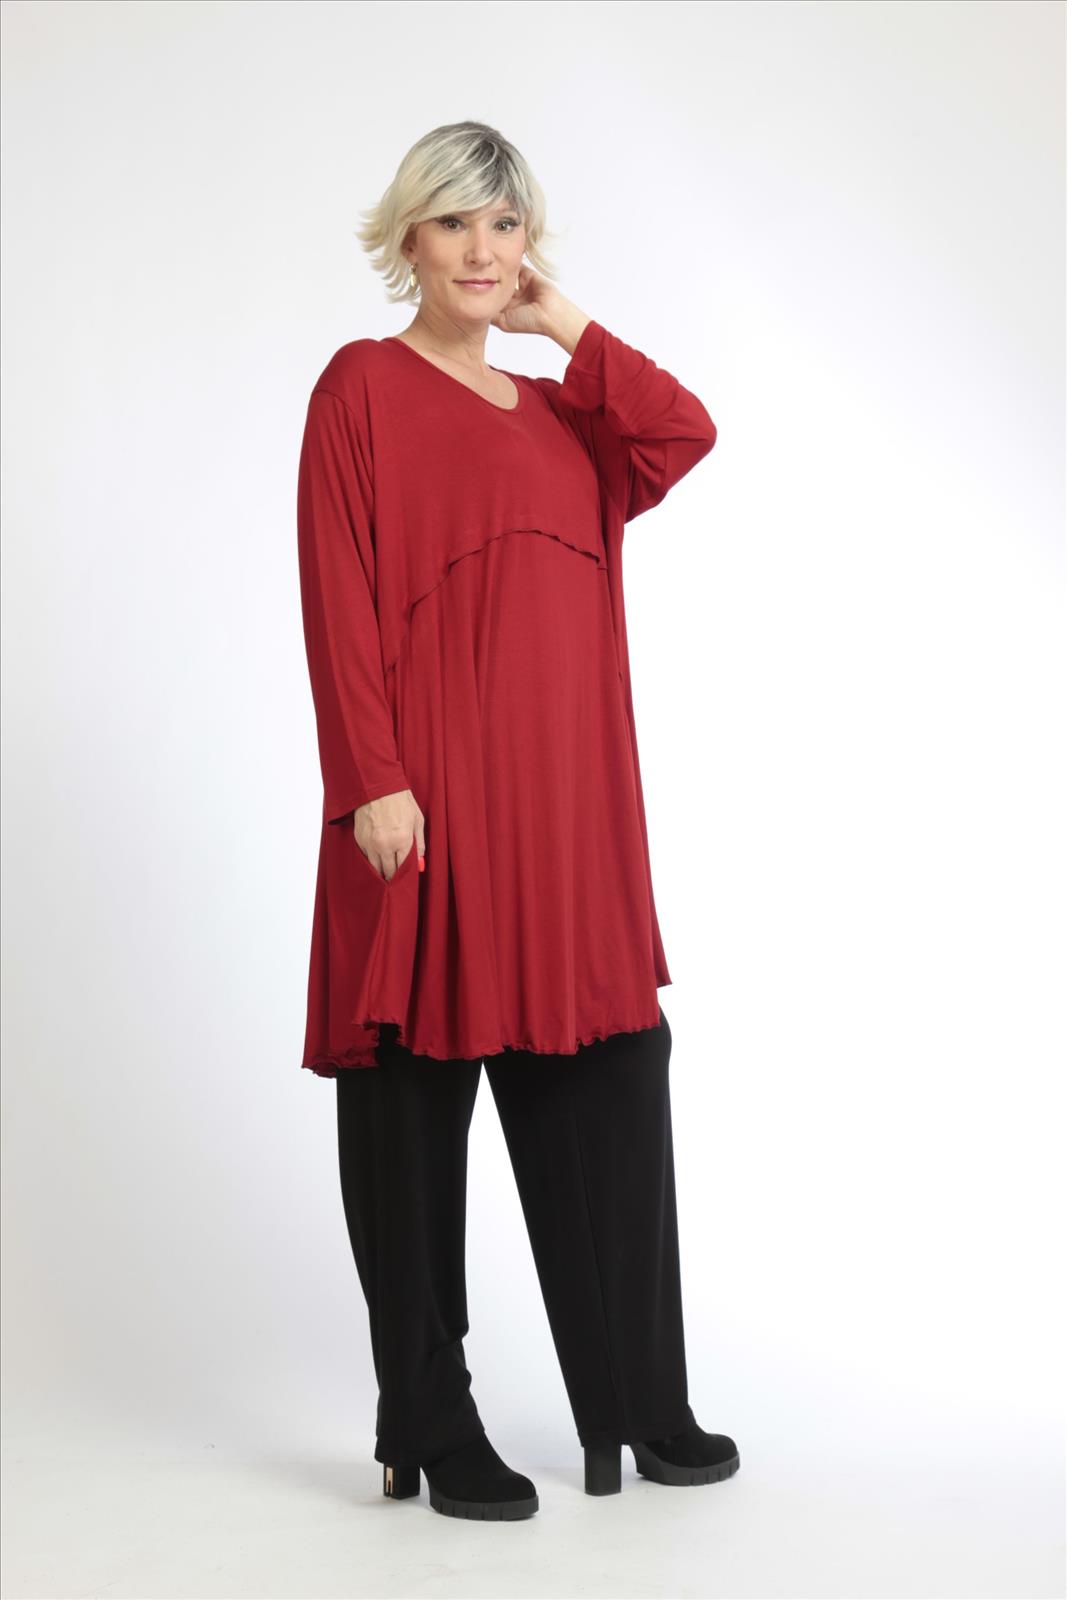 Alltags Big Shirt in A-Form aus feiner Jersey Qualität, Rot Lagenlook Oversize Mode B2B Großhandel